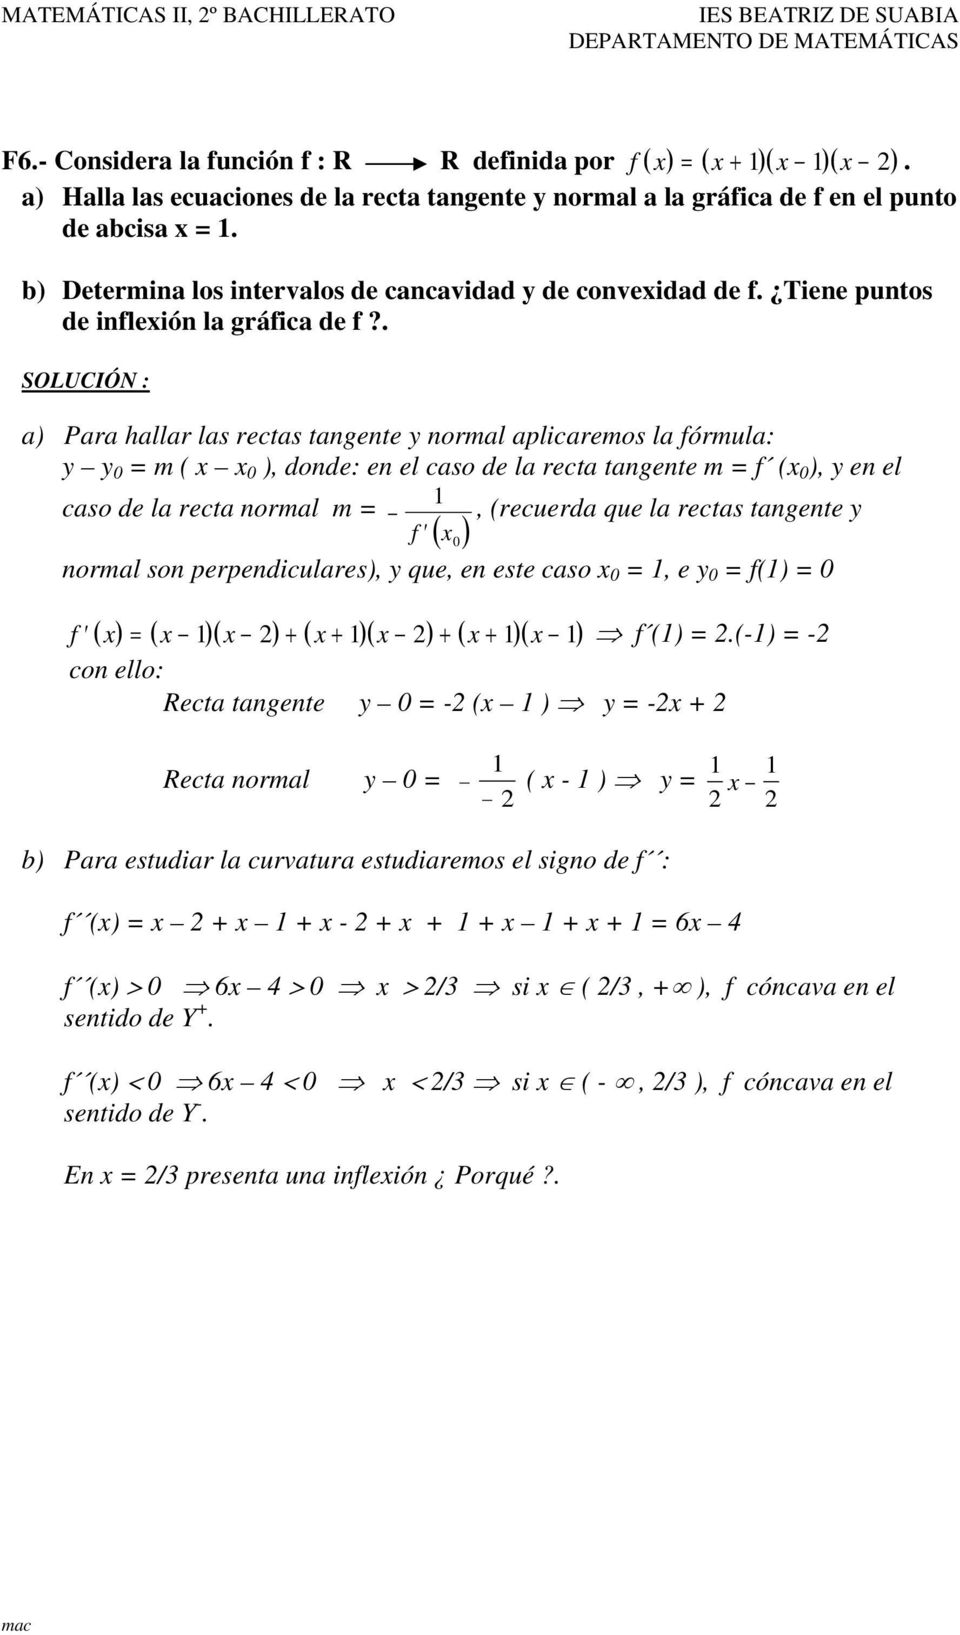 . SOLUCIÓN : a) Para hallar las rectas tangente y normal aplicaremos la fórmula: y y = m ( ), donde: en el caso de la recta tangente m = f ( ), y en el caso de la recta normal m =, (recuerda que la